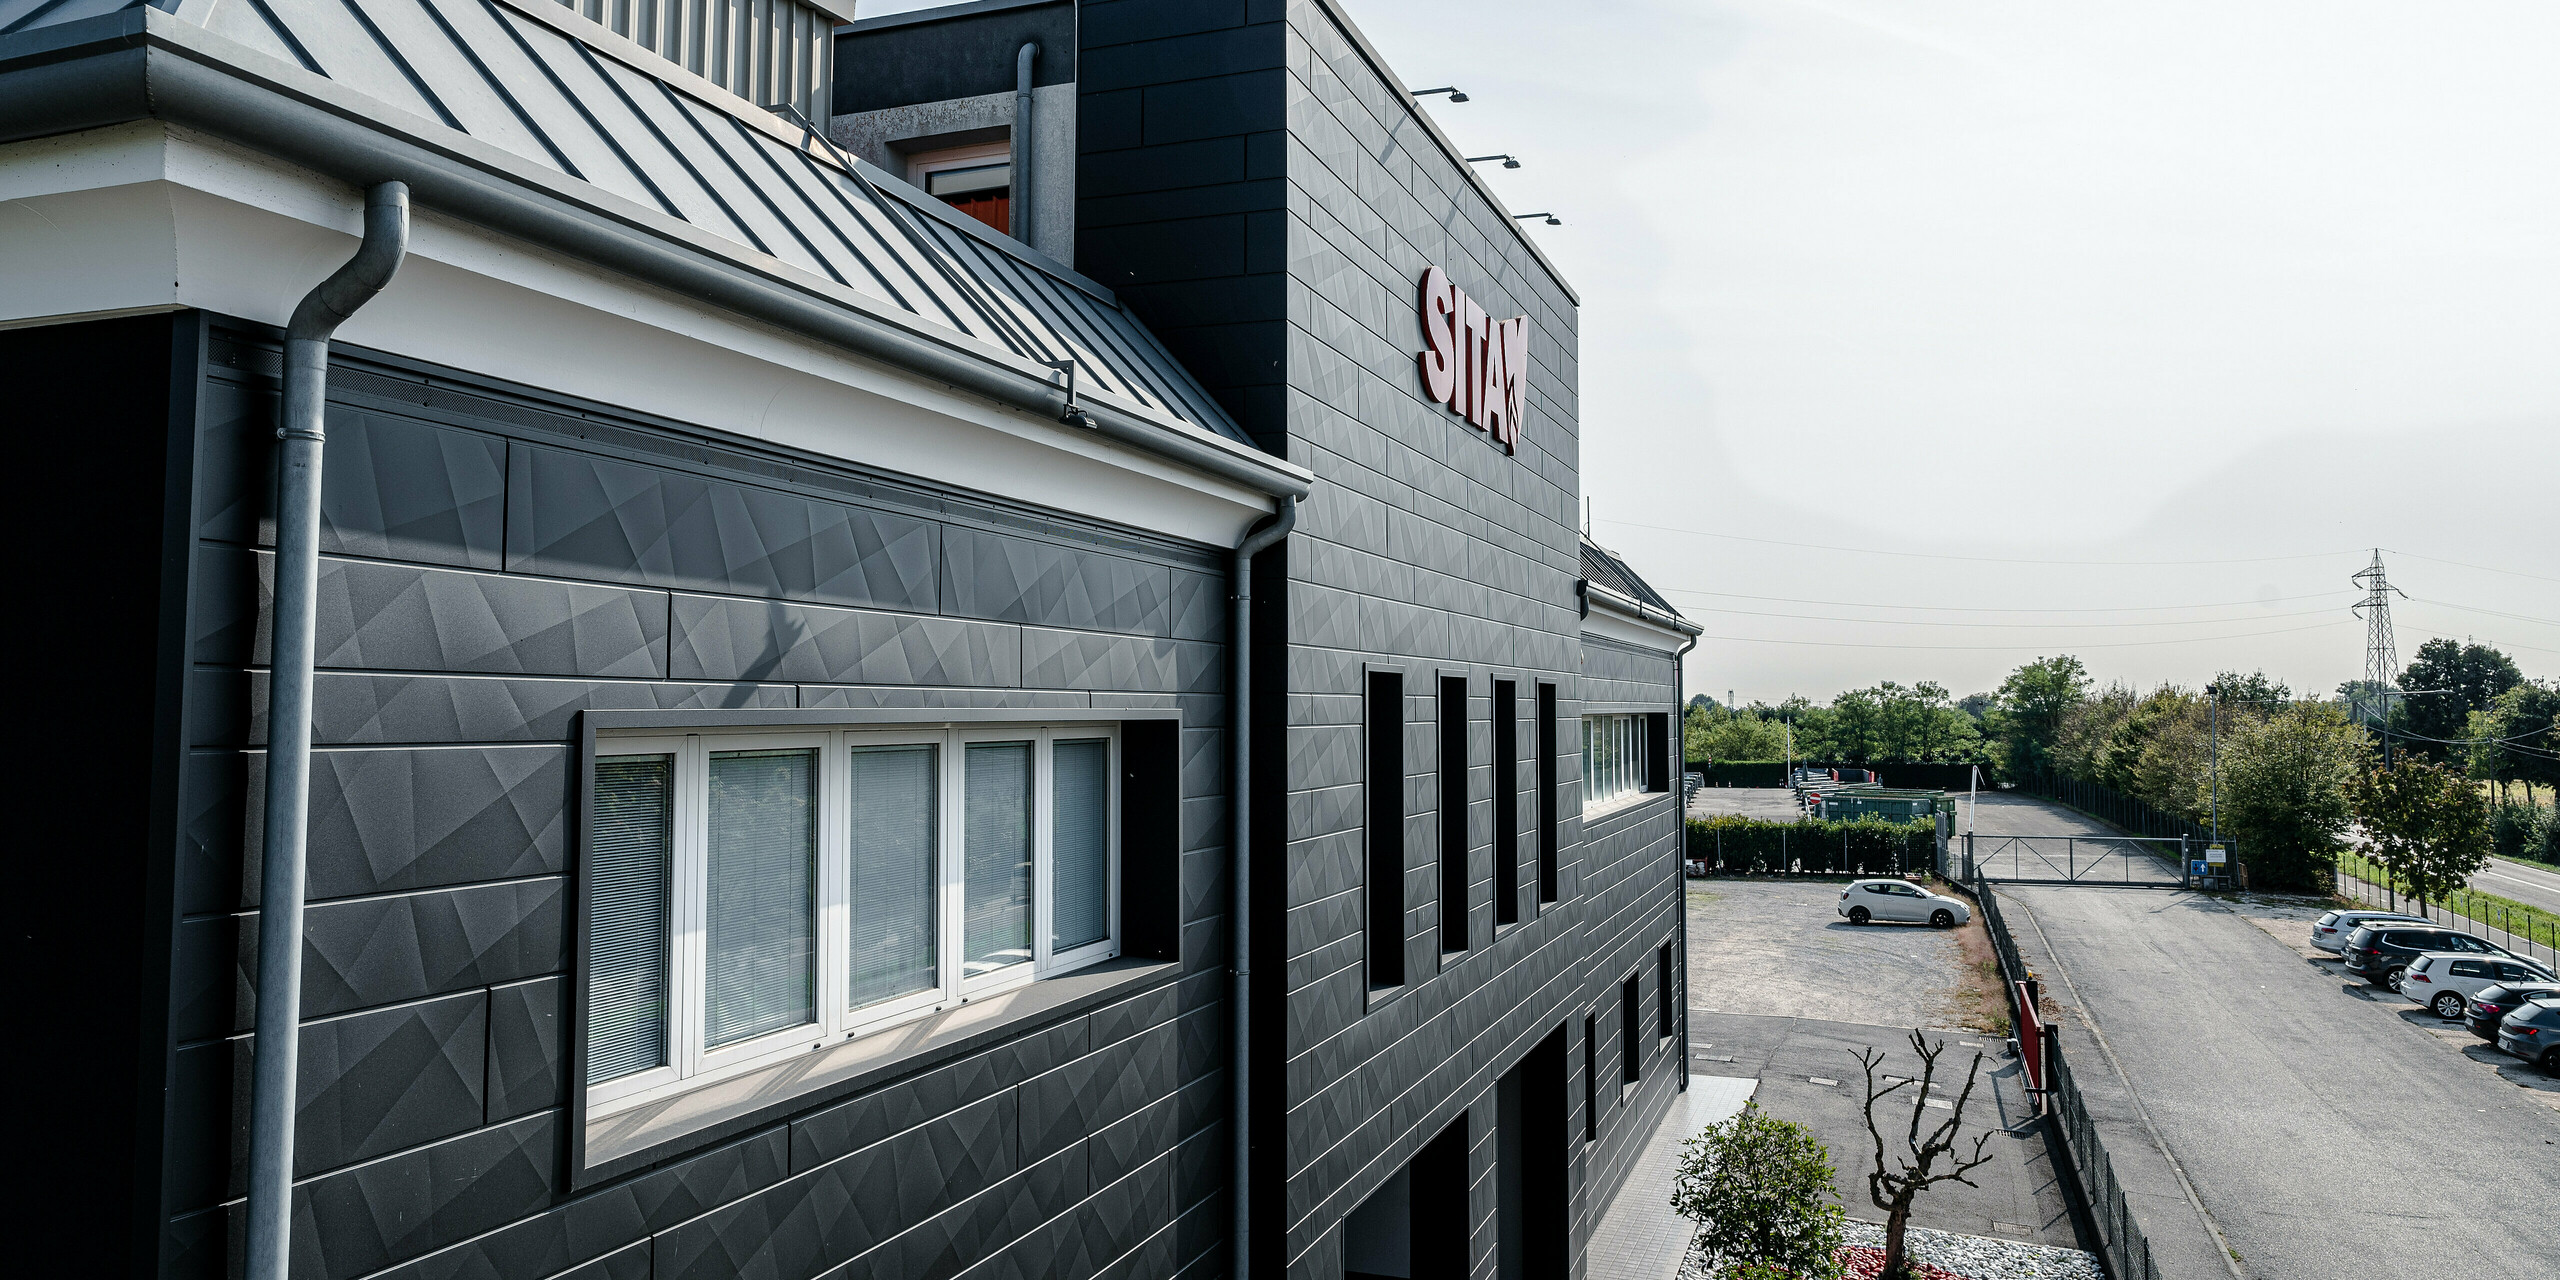 Perspektívny pohľad na budovu spoločnosti SITA v Porcellengu v Taliansku so zameraním na štruktúrovanú fasádu PREFA Siding.X v čiernej farbe P.10. Kompozícia snímky ukazuje harmonické začlenenie budovy do okolia s jasnými líniami a výraznou geometriou strechy, ktorá odráža vysokú kvalitu a povedomie o dizajne spoločnosti PREFA. Červené logo spoločnosti tvorí na fasáde pútavý akcent, ktorý je nielen vizuálne príťažlivý, ale aj funkčný a odolný voči poveternostným vplyvom, čím chráni a zveľaďuje budovu. Okolité parkovisko a upravená zeleň dotvárajú obraz a zdôrazňujú prítomnosť spoločnosti v regióne.